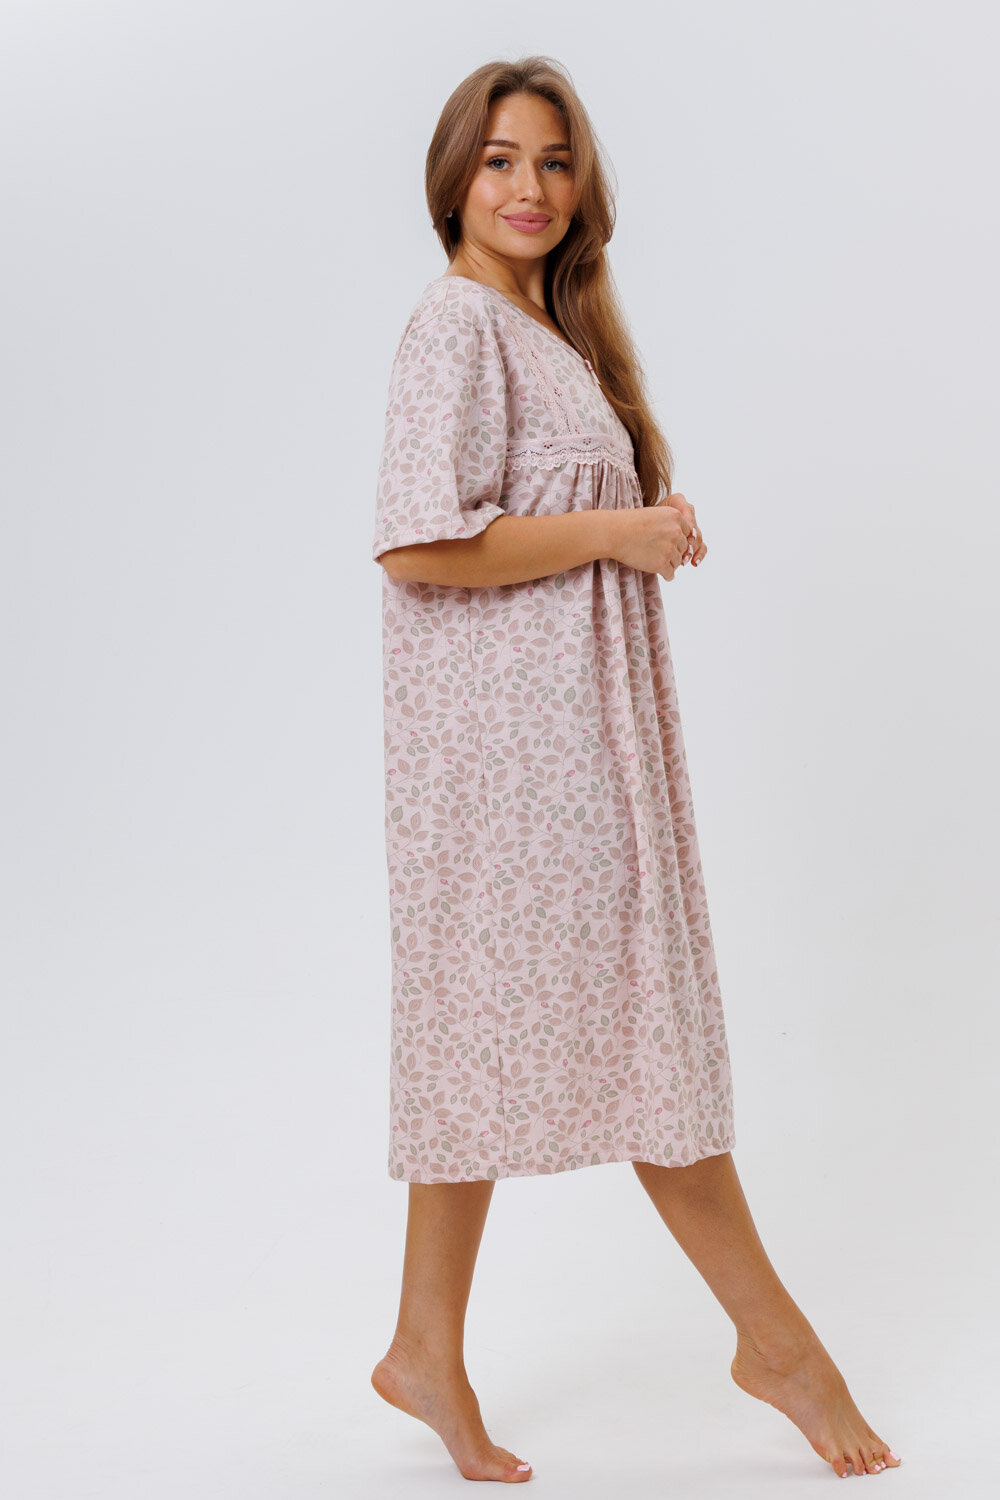 Сорочка Modellini, размер 58, розовый, бежевый - фотография № 6